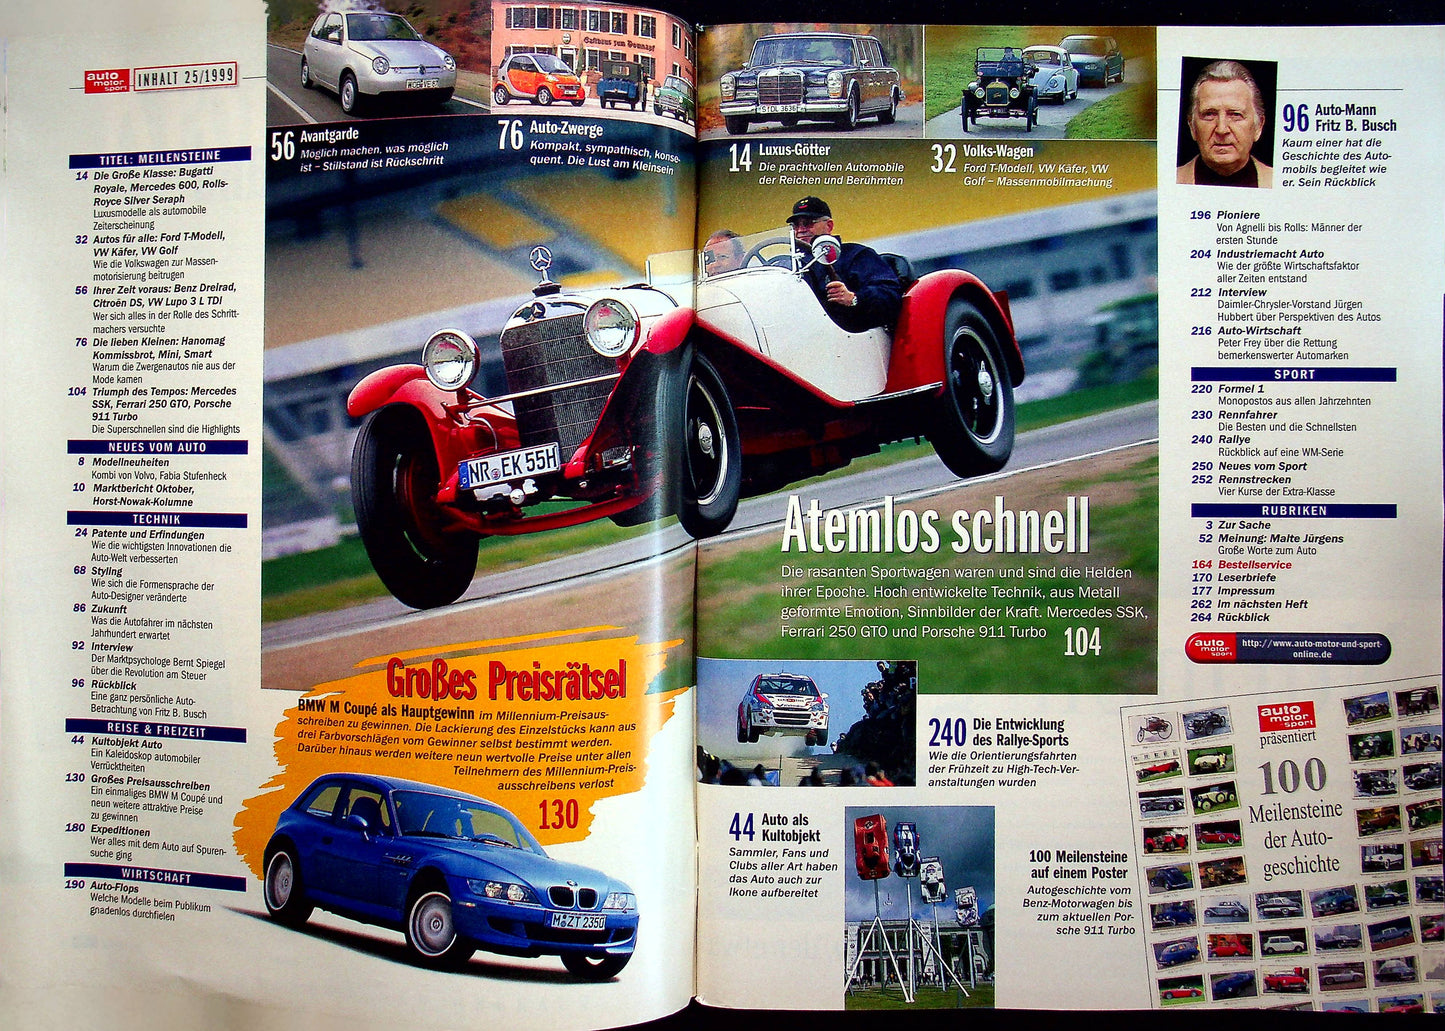 Auto Motor und Sport 25/1999